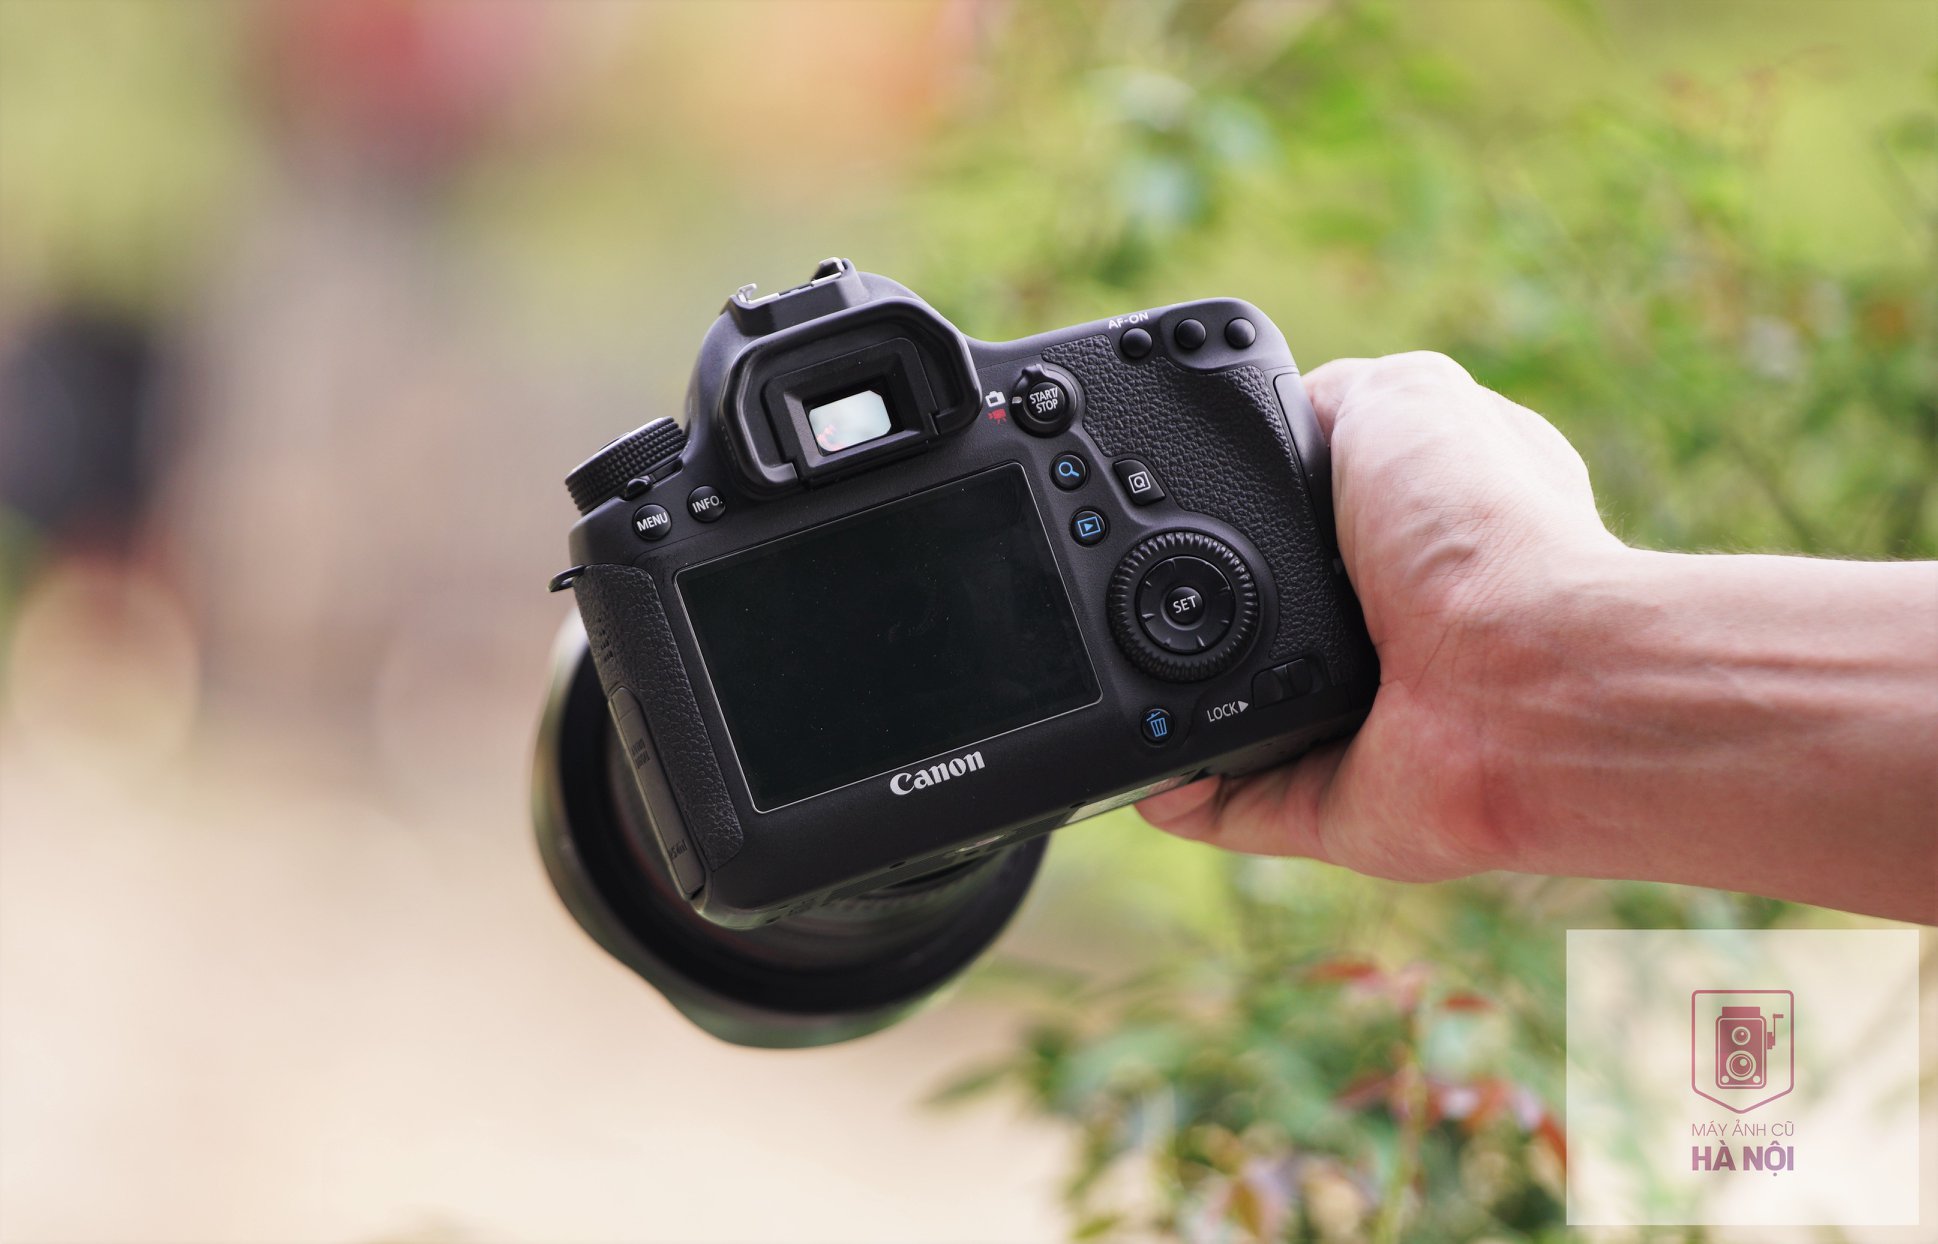 Đánh giá Canon 6D cho thấy đây là một chiếc máy ảnh chất lượng cao với rất nhiều tính năng tốt. Hãy xem hình ảnh liên quan để cảm nhận được vẻ đẹp và sự chuyên nghiệp của nó.